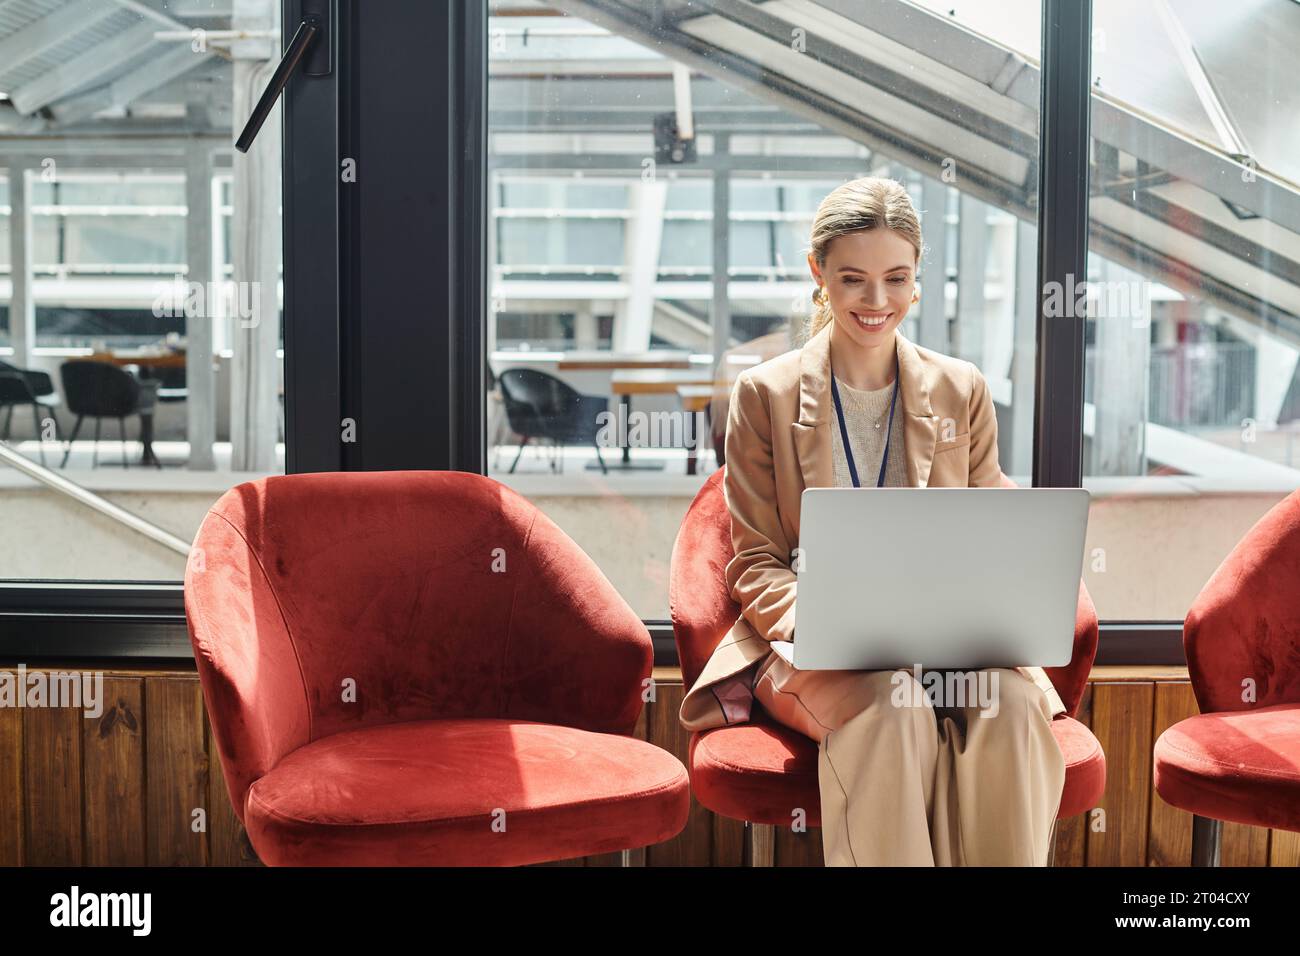 jeune employée blonde assise sur une chaise travaillant sur son ordinateur portable avec toile de fond en verre, concept de coworking Banque D'Images